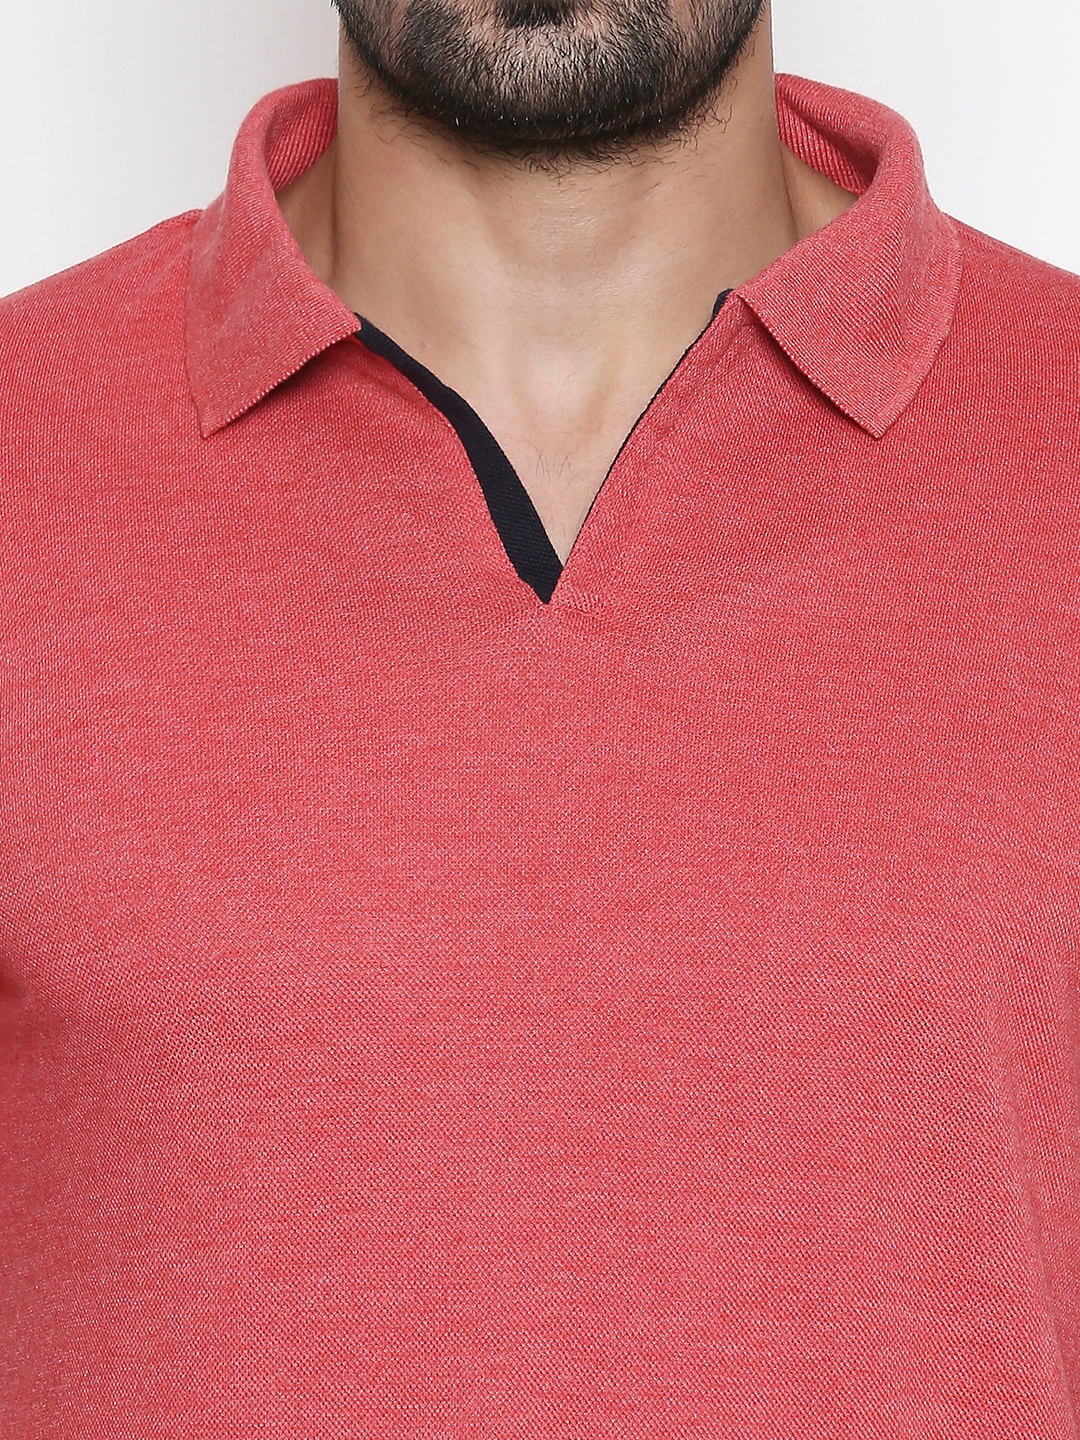 Integriti | Integriti Red Slim Fit Men's T-Shirts 1